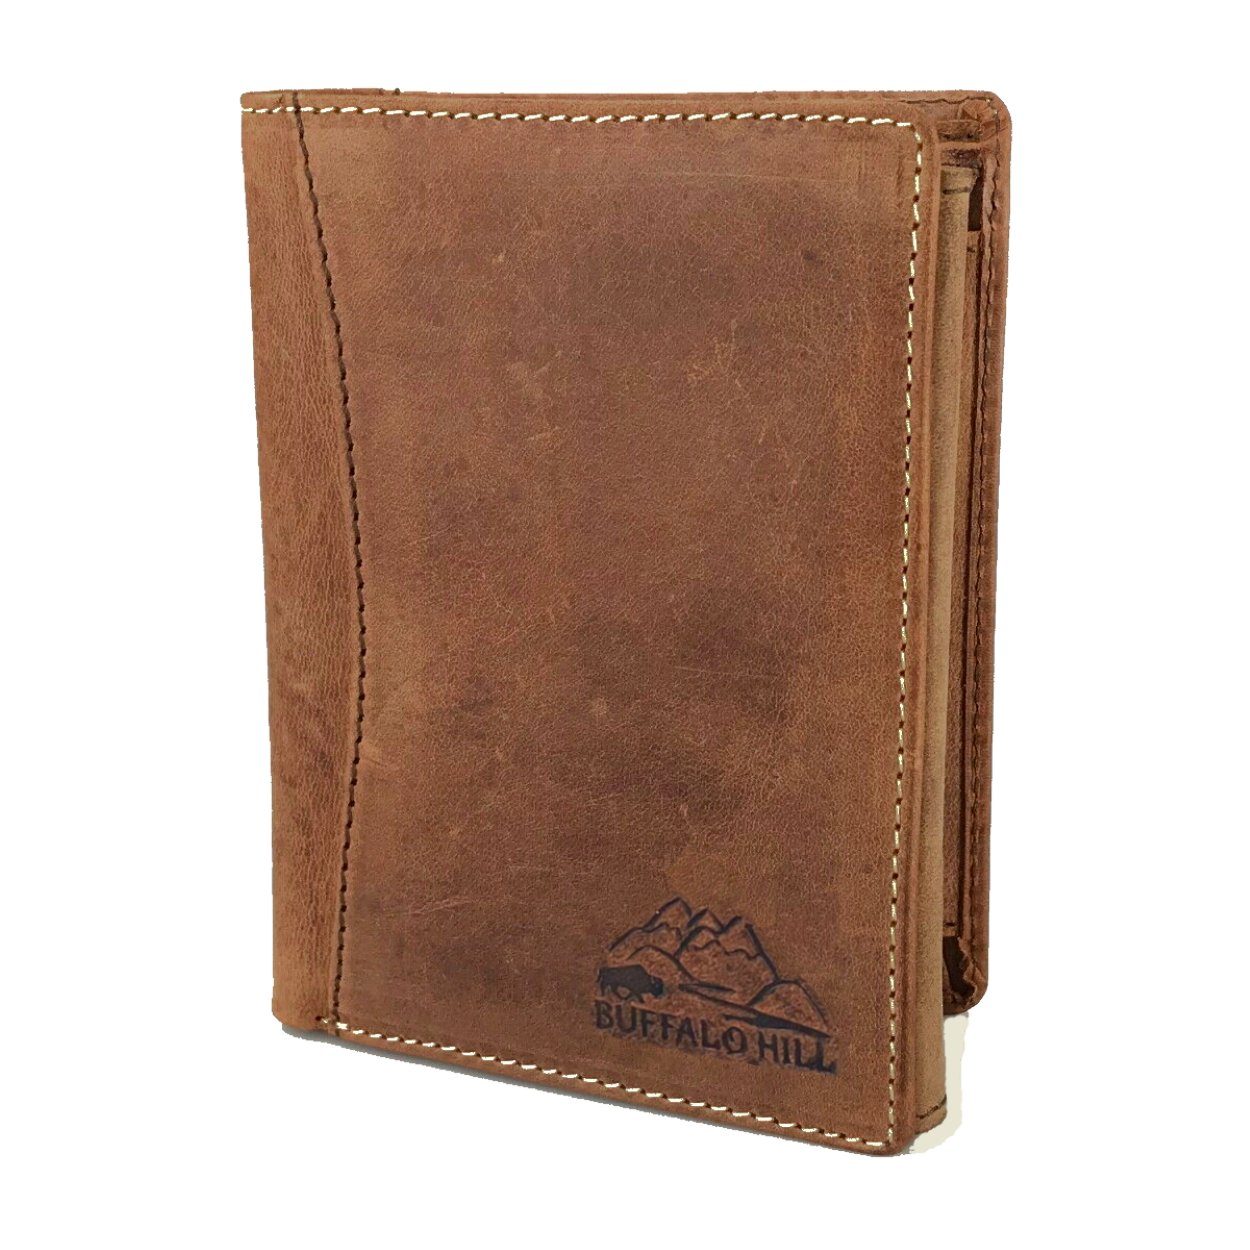 Buffalo Hill Geldbörse Büffelleder Portemonnaie, integrierter RFID-Schutz >BH-2395<, elegantes Wallet mit 8 Kartenfächern in Naturfarben